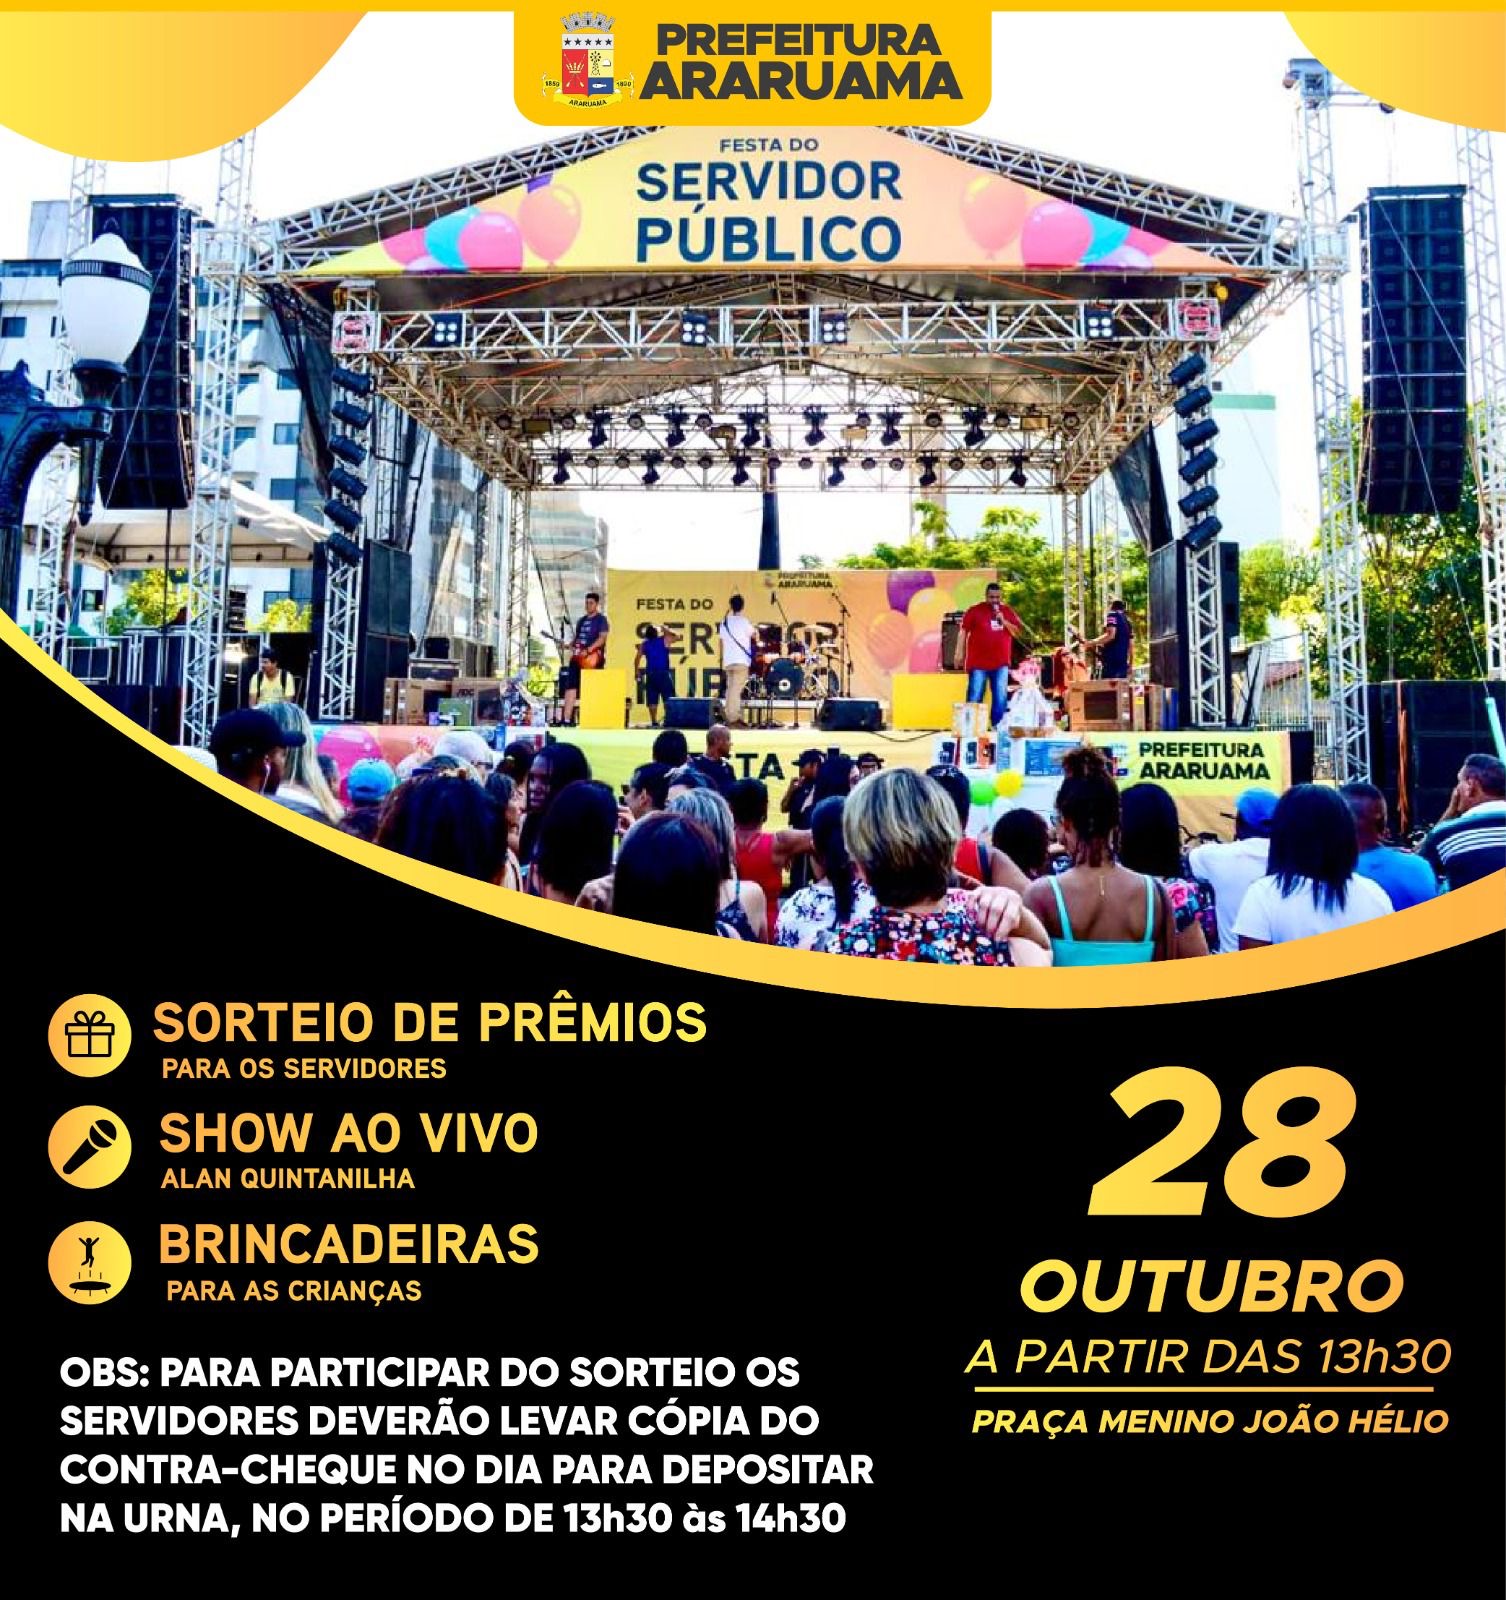 Prefeitura de Araruama vai realizar a tradicional Festa do Servidor Público na Praça Menino João Hélio